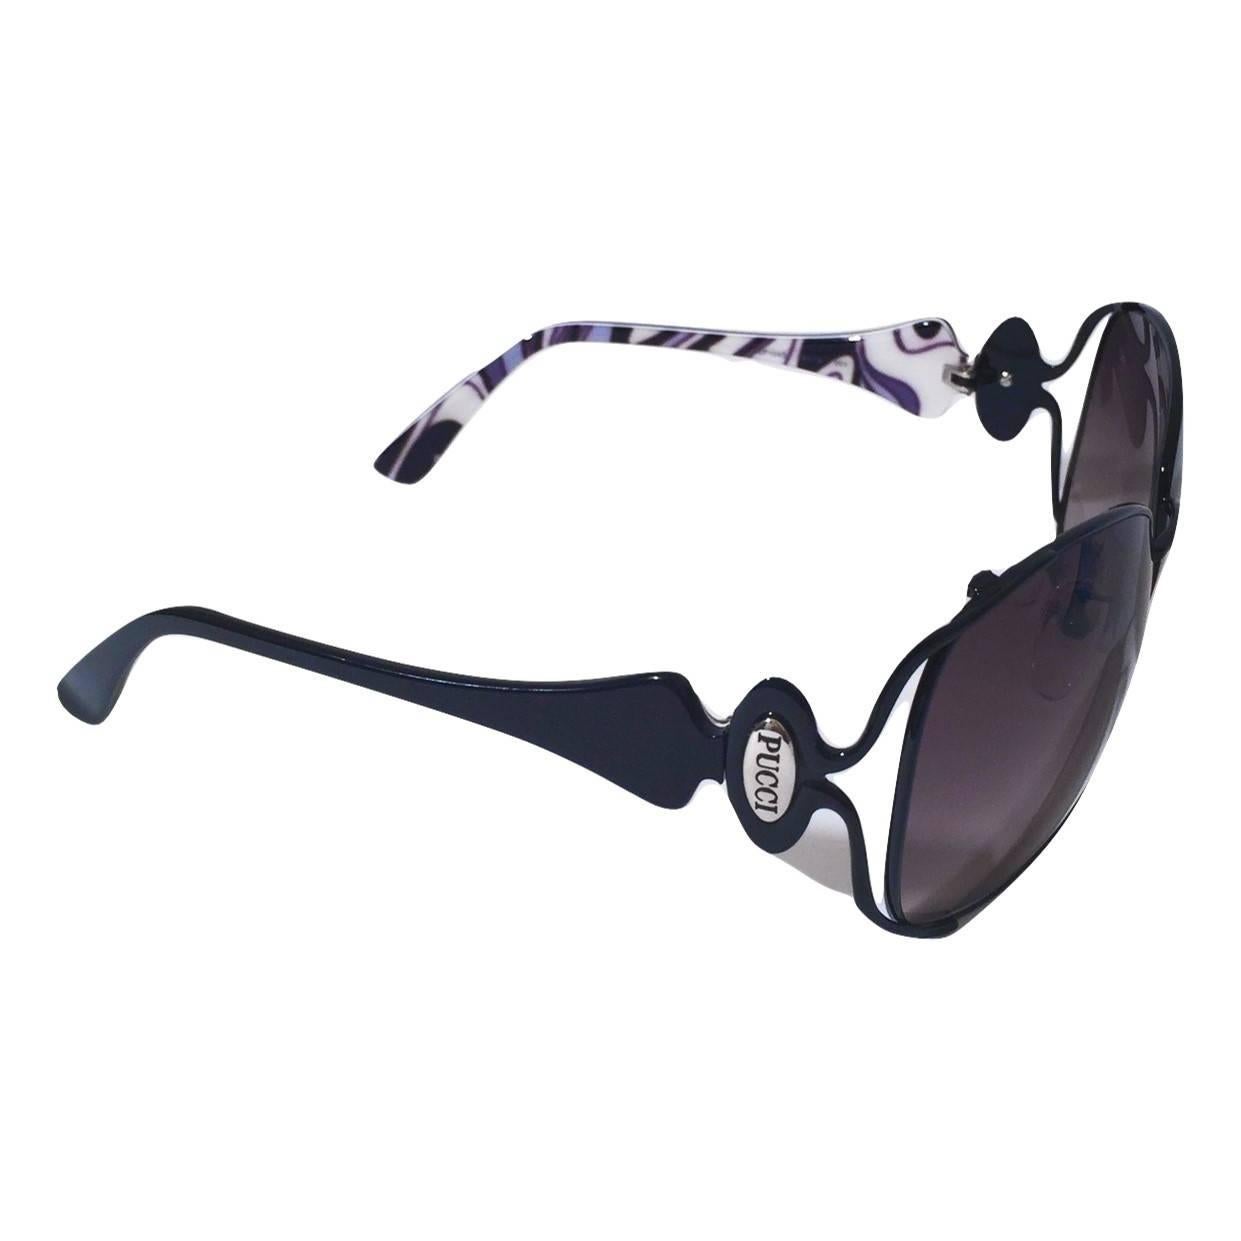 New Emilio Pucci Black Aviator Sunglasses With Case & Box 8